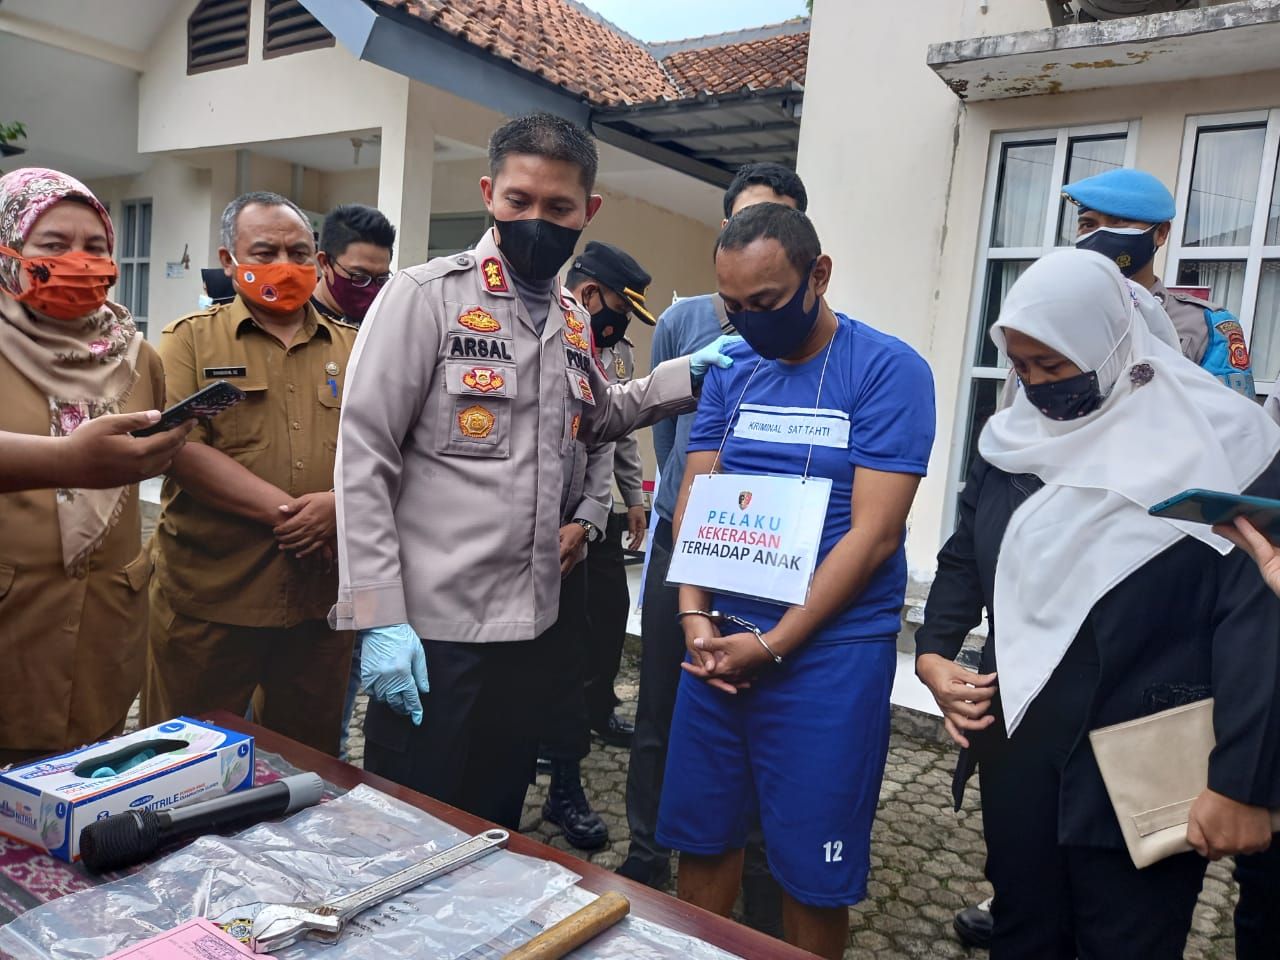 Wakapolresta Bogor AKBP Arsal Sahban dengan pelaku kekeasan rumah tangga Achmad Saputra (38), Selasa 23 Maret 2021